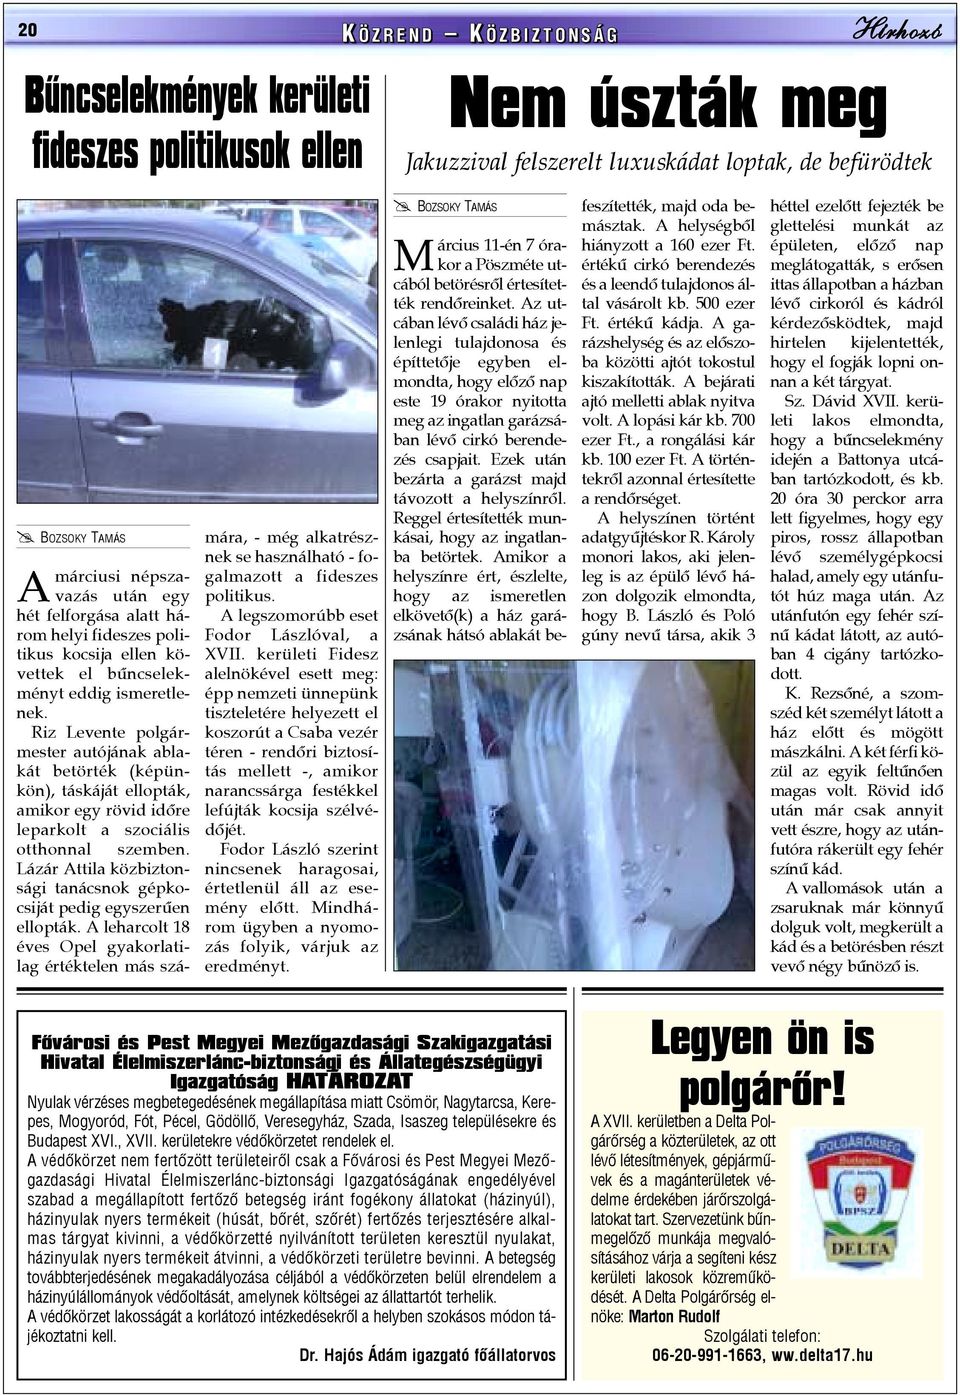 Riz Levente polgármester autójának ablakát betörték (képünkön), táskáját ellopták, amikor egy rövid idõre leparkolt a szociális otthonnal szemben.